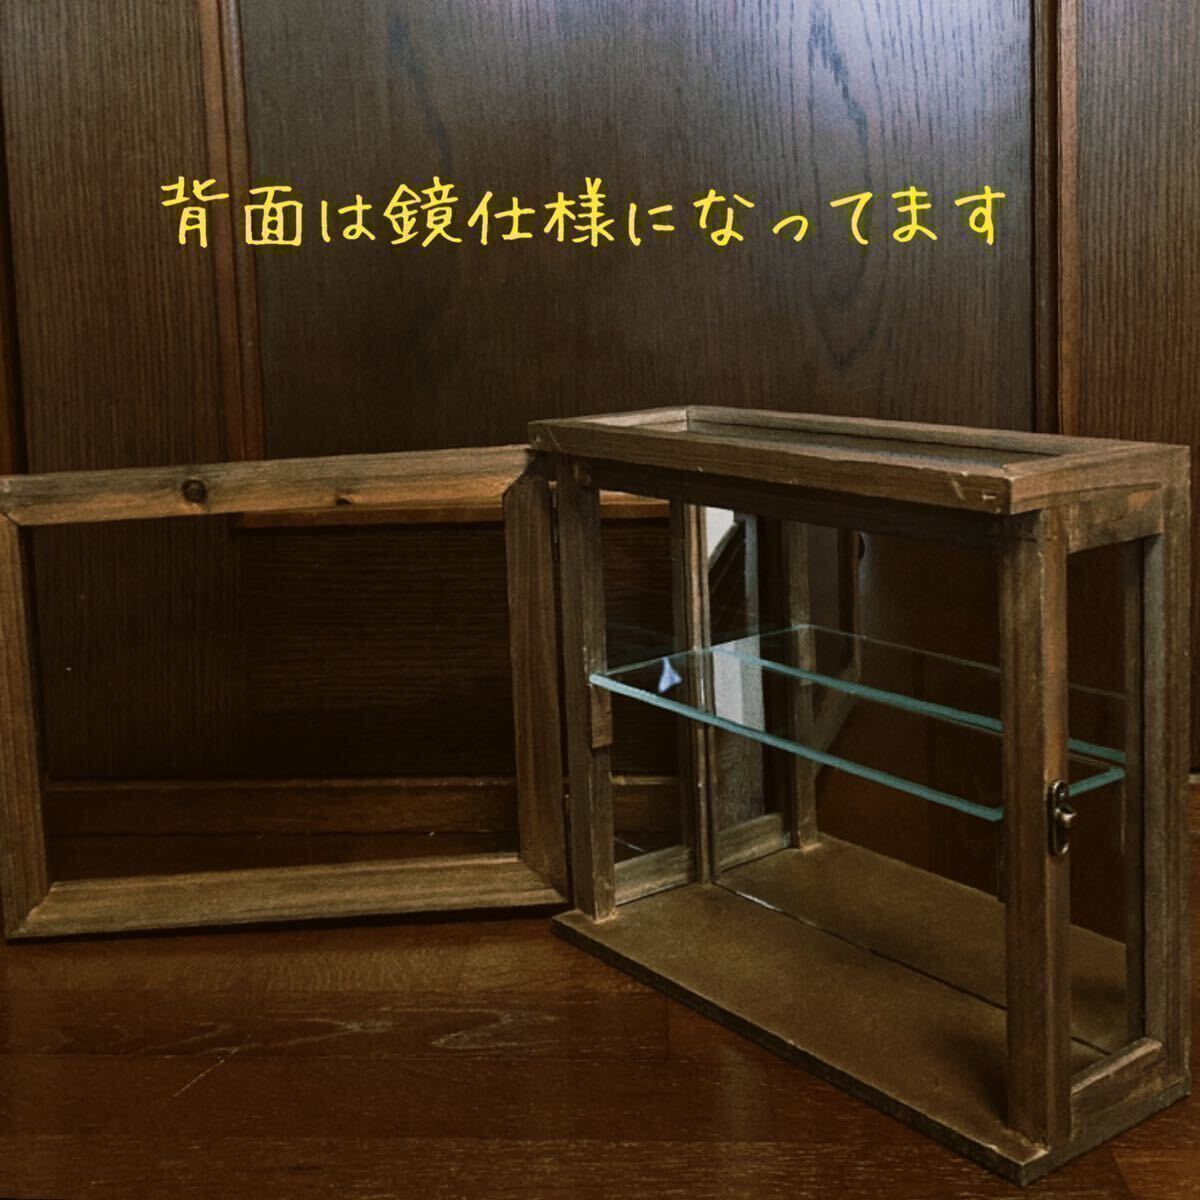  античный из дерева стеклянный кейс шкаф витрина maru she дисплей кейс кейс для коллекции Showa Retro очки box 